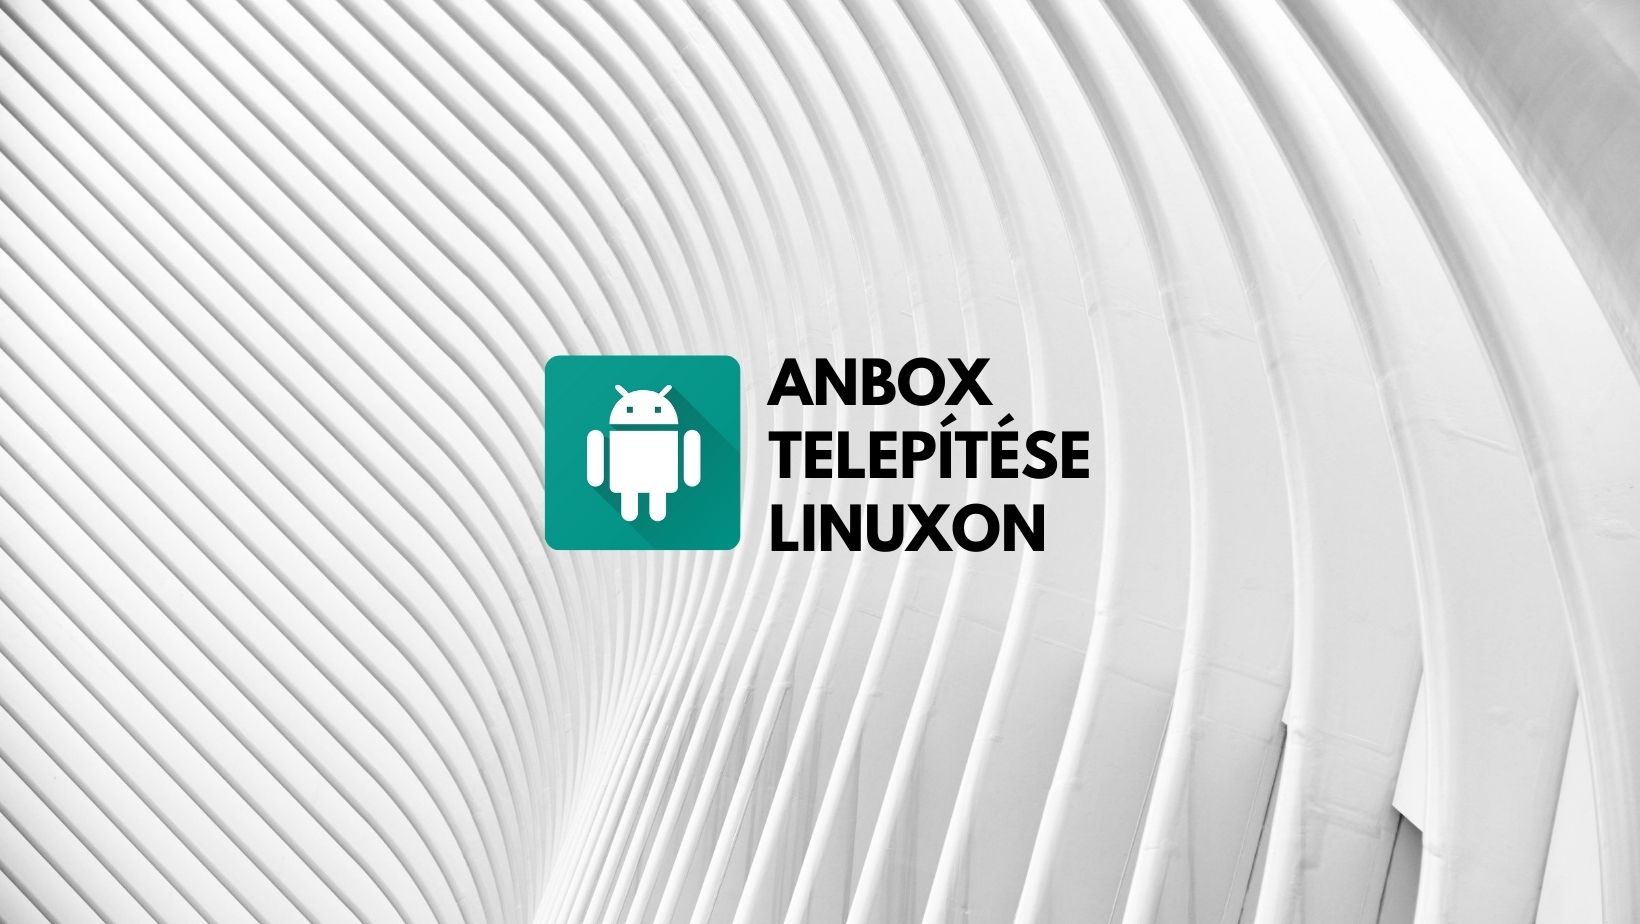 Anbox telepítése Linuxon, Android alkalmazások futtatásához